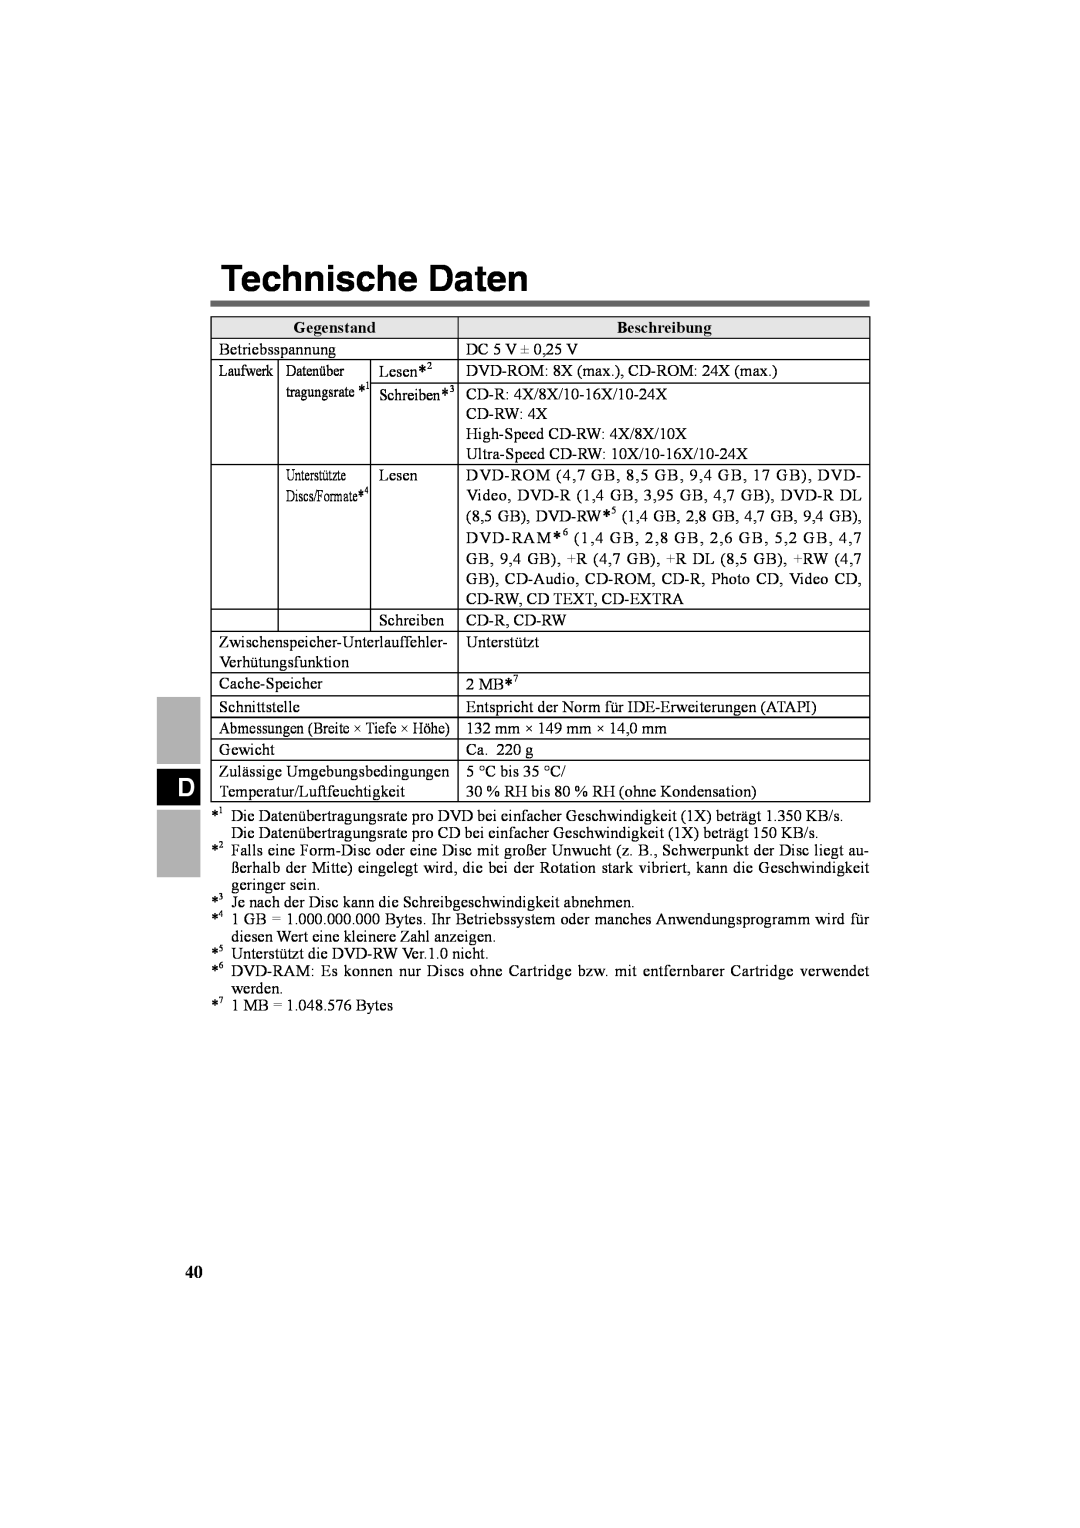 Panasonic CF-VDR301U specifications Technische Daten, Gegenstand, Beschreibung 